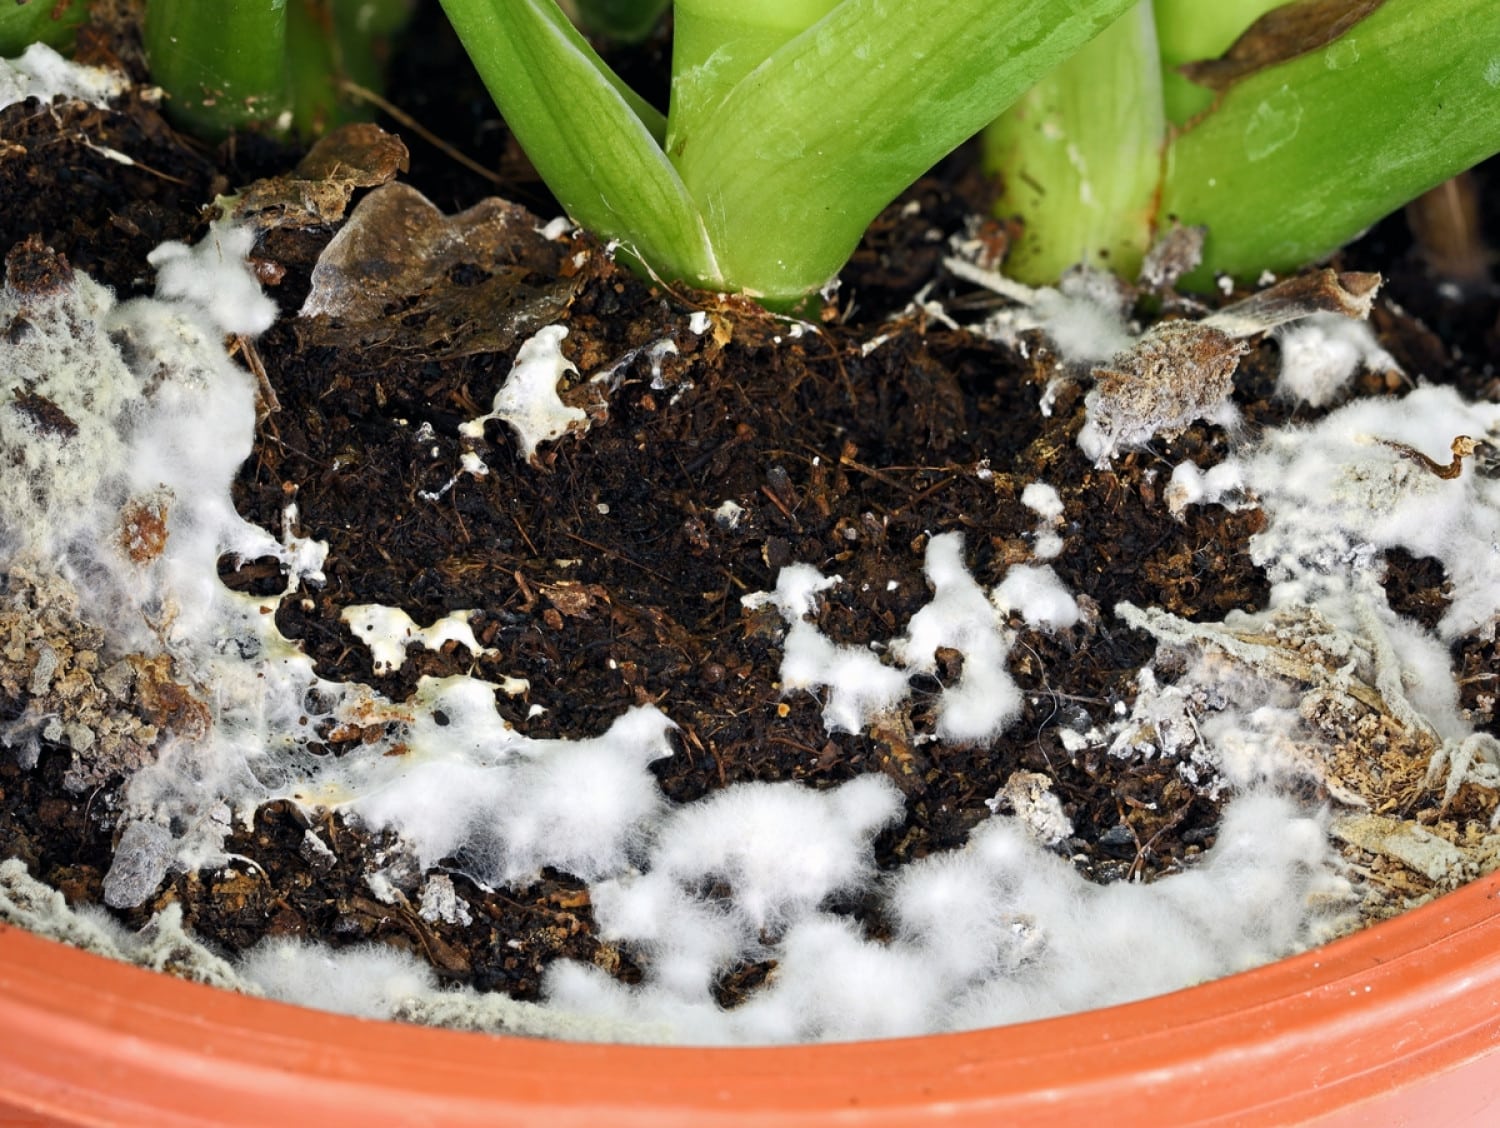  Befrij jo planten fan wite fungus: sjoch krêftige fjochtstechniken